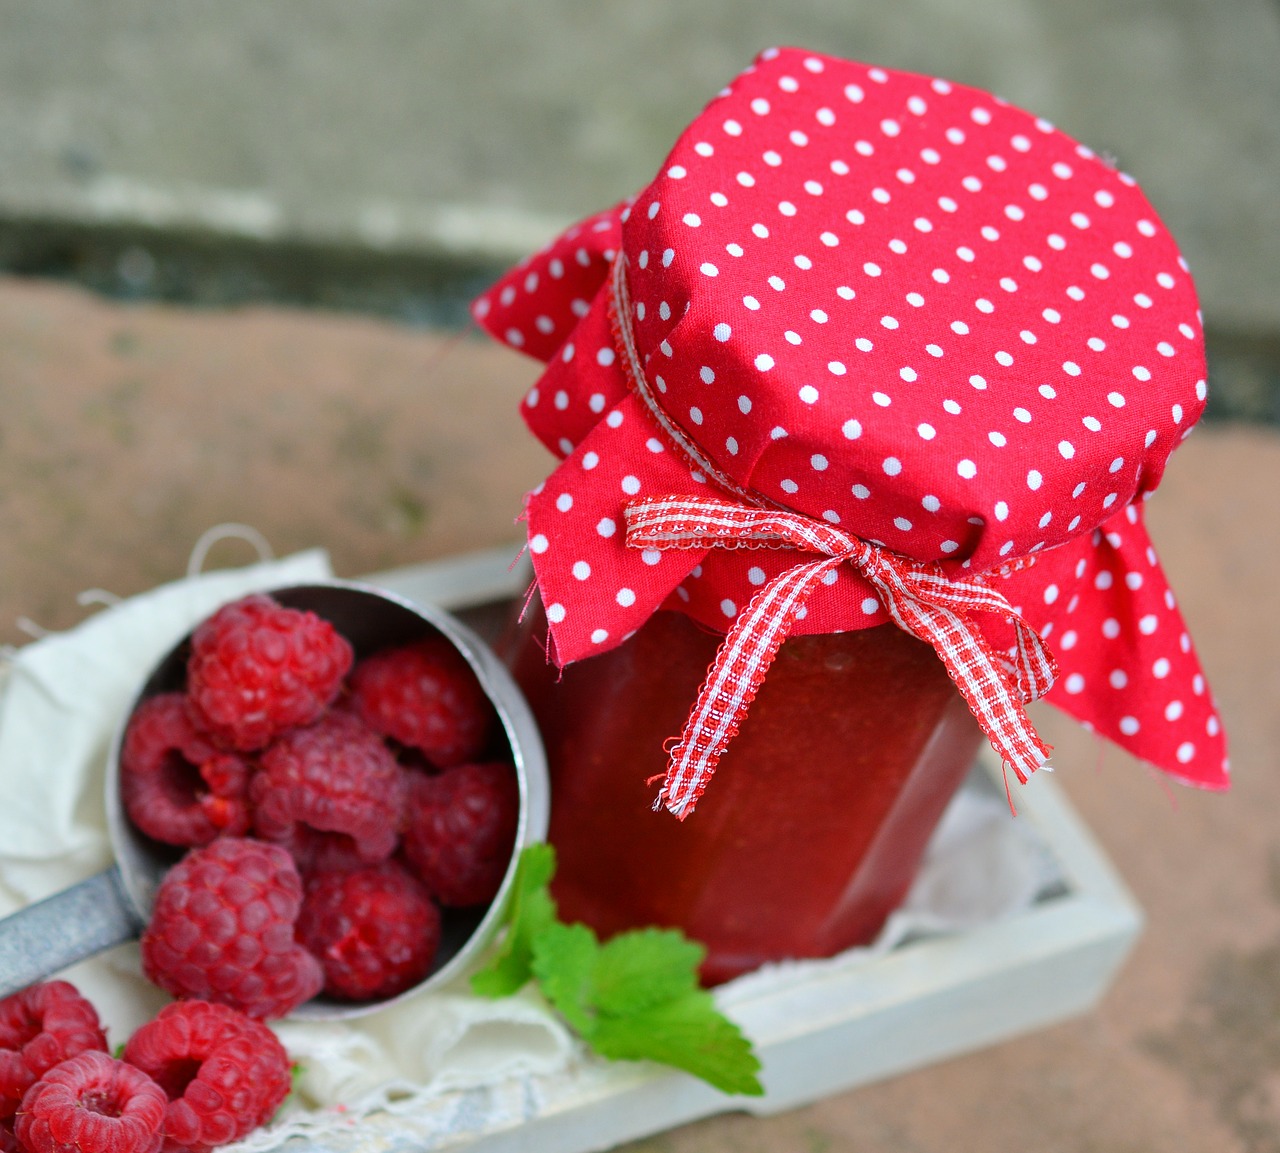 jar of jam raspberries berries free photo